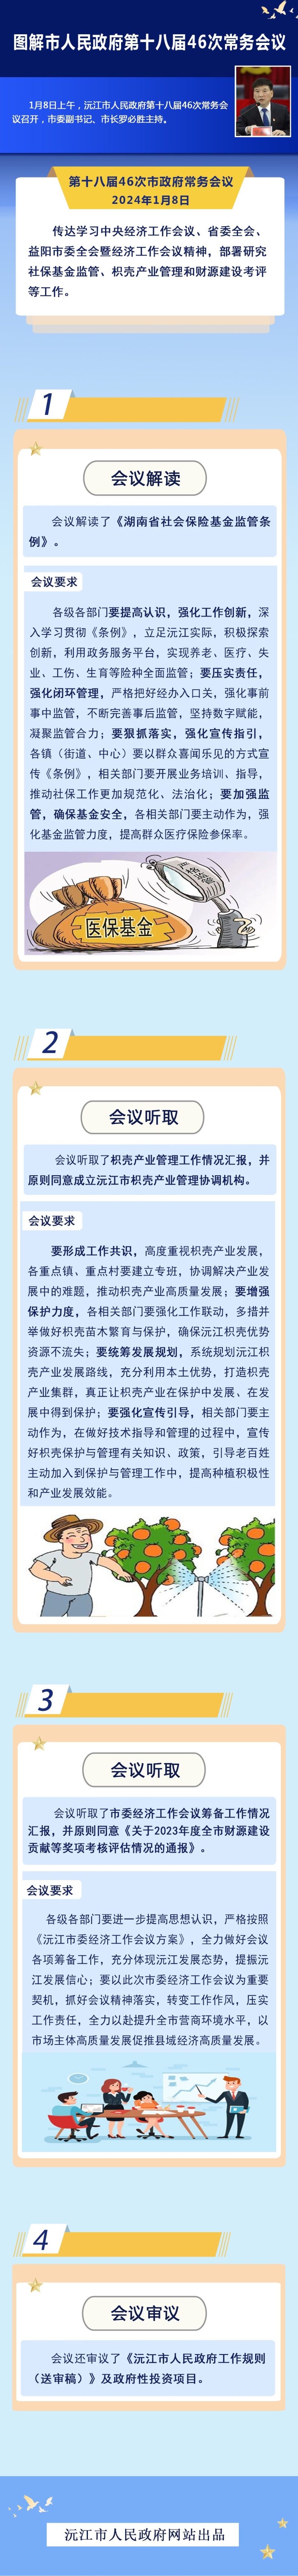 【图解】沅江市人民政府第十八届46次常务会议